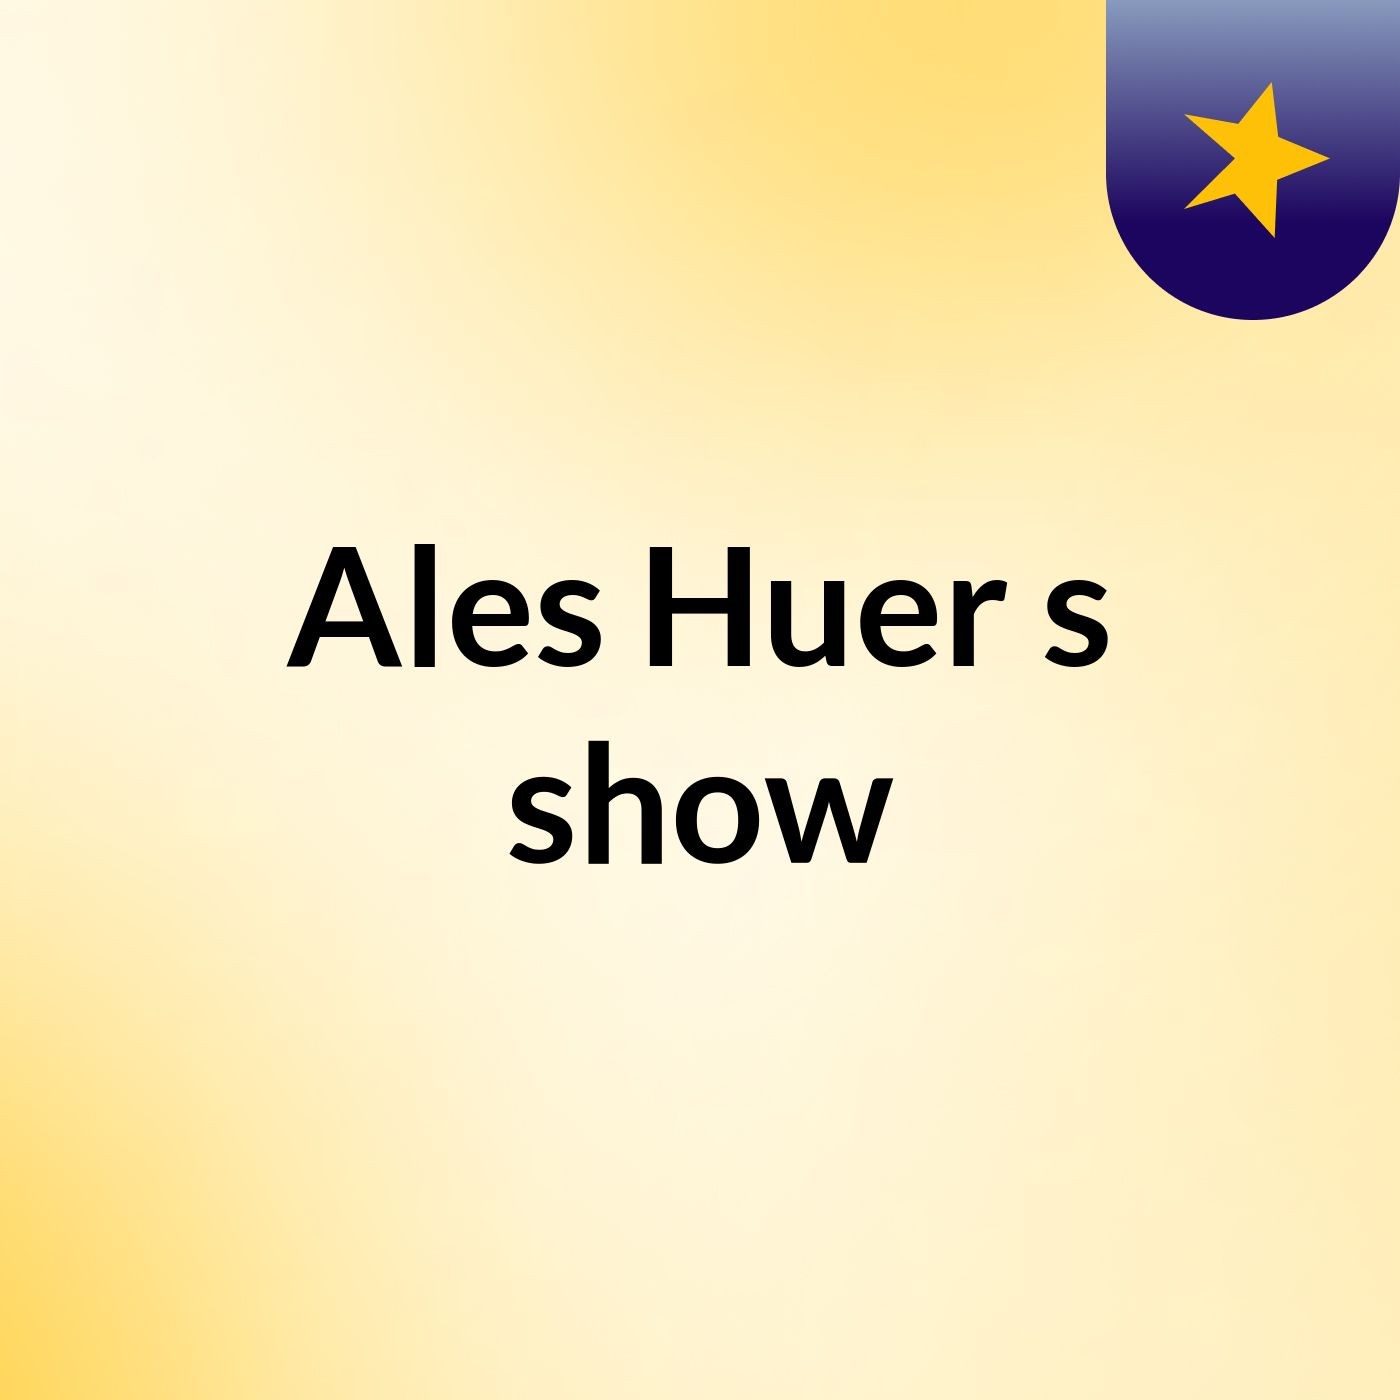 Ales Huer's show